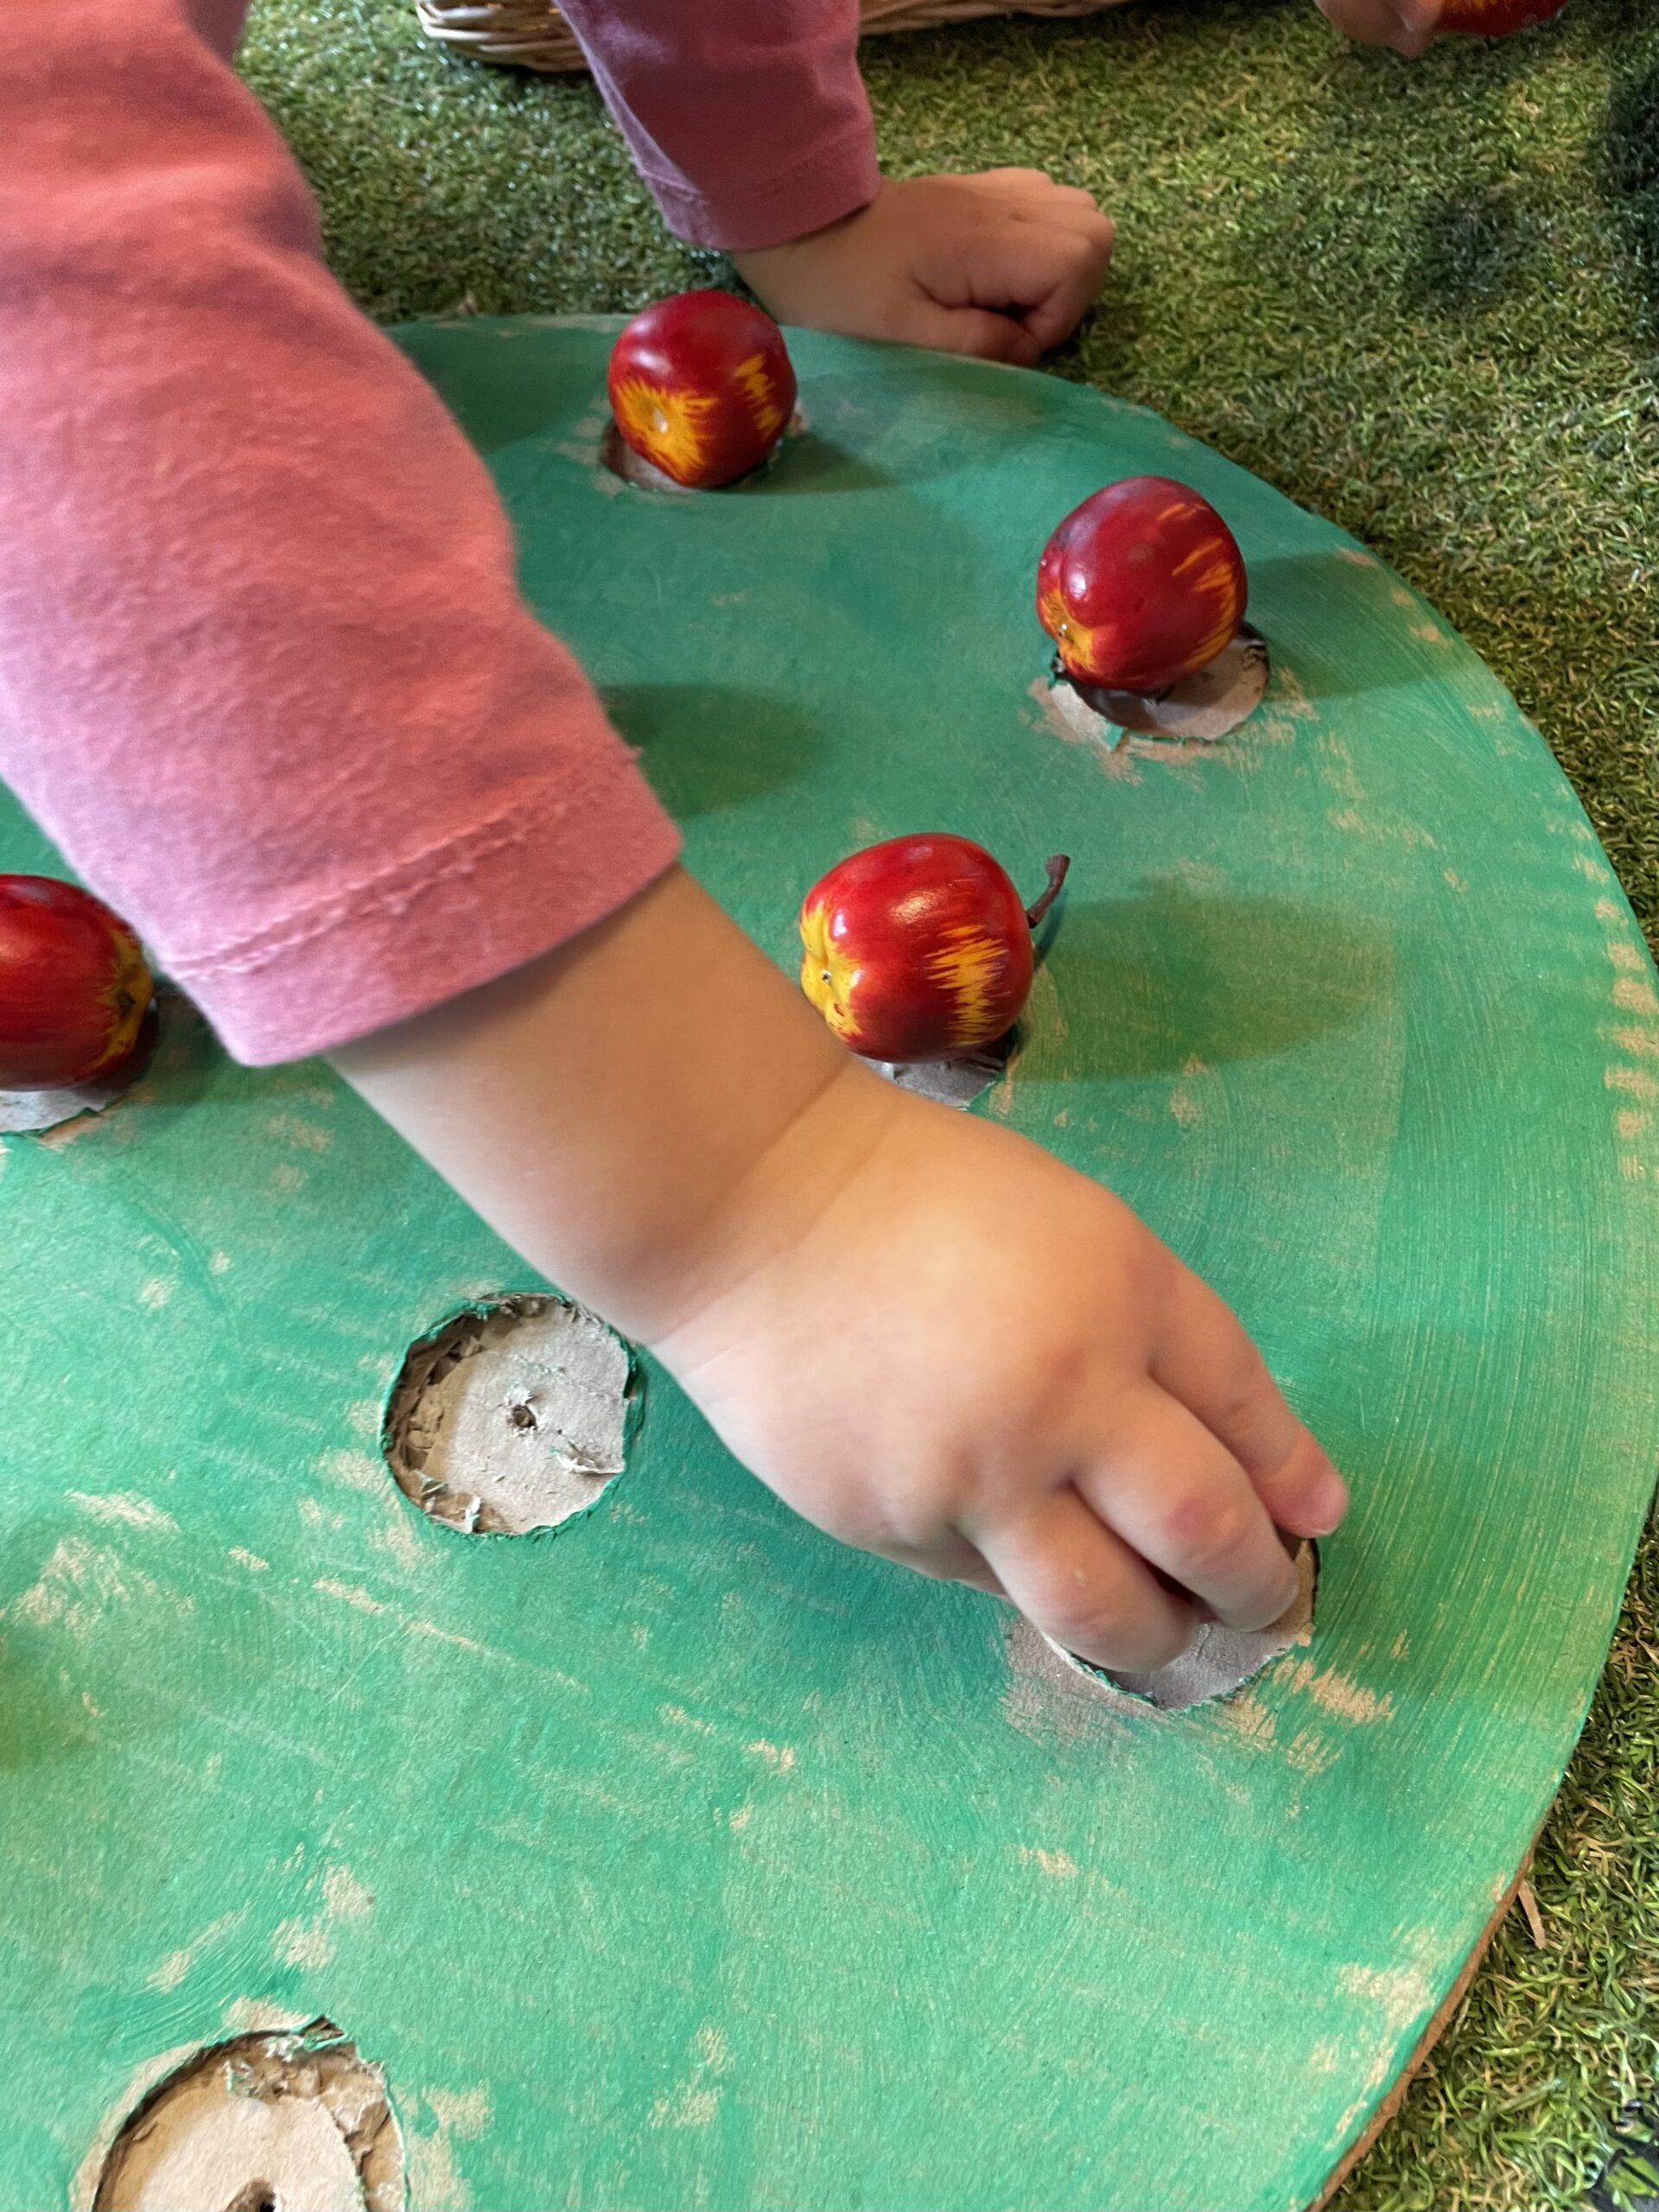 Bild zum Schritt 9 für das Bastel- und DIY-Abenteuer für Kinder: 'Legt die Äpfel beliebig  auf und erntet sie anschließend...'